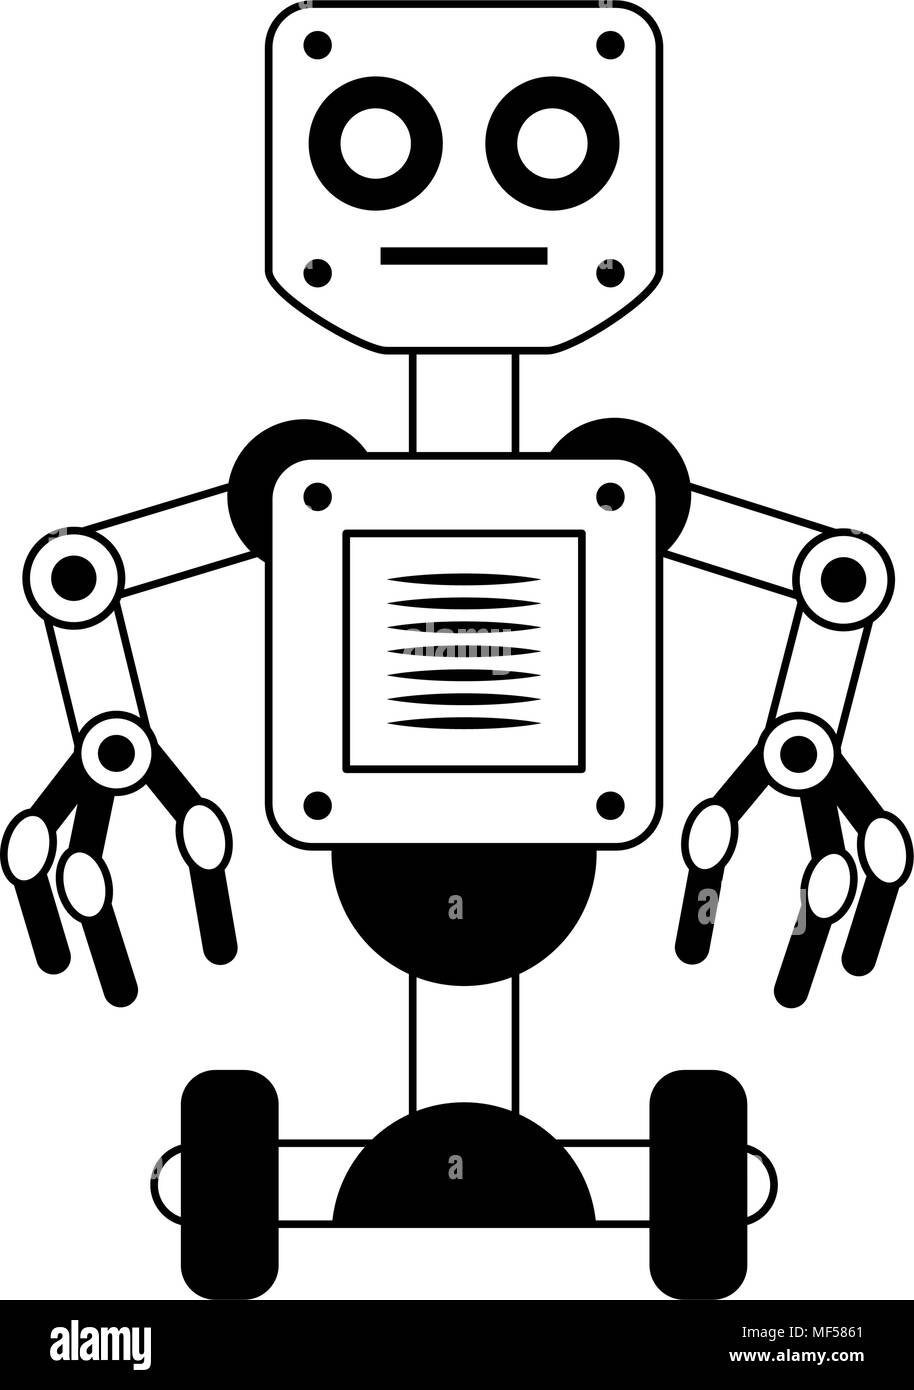 Roboter Technologie Cartoon auf schwarz weiß Farben Stock-Vektorgrafik -  Alamy